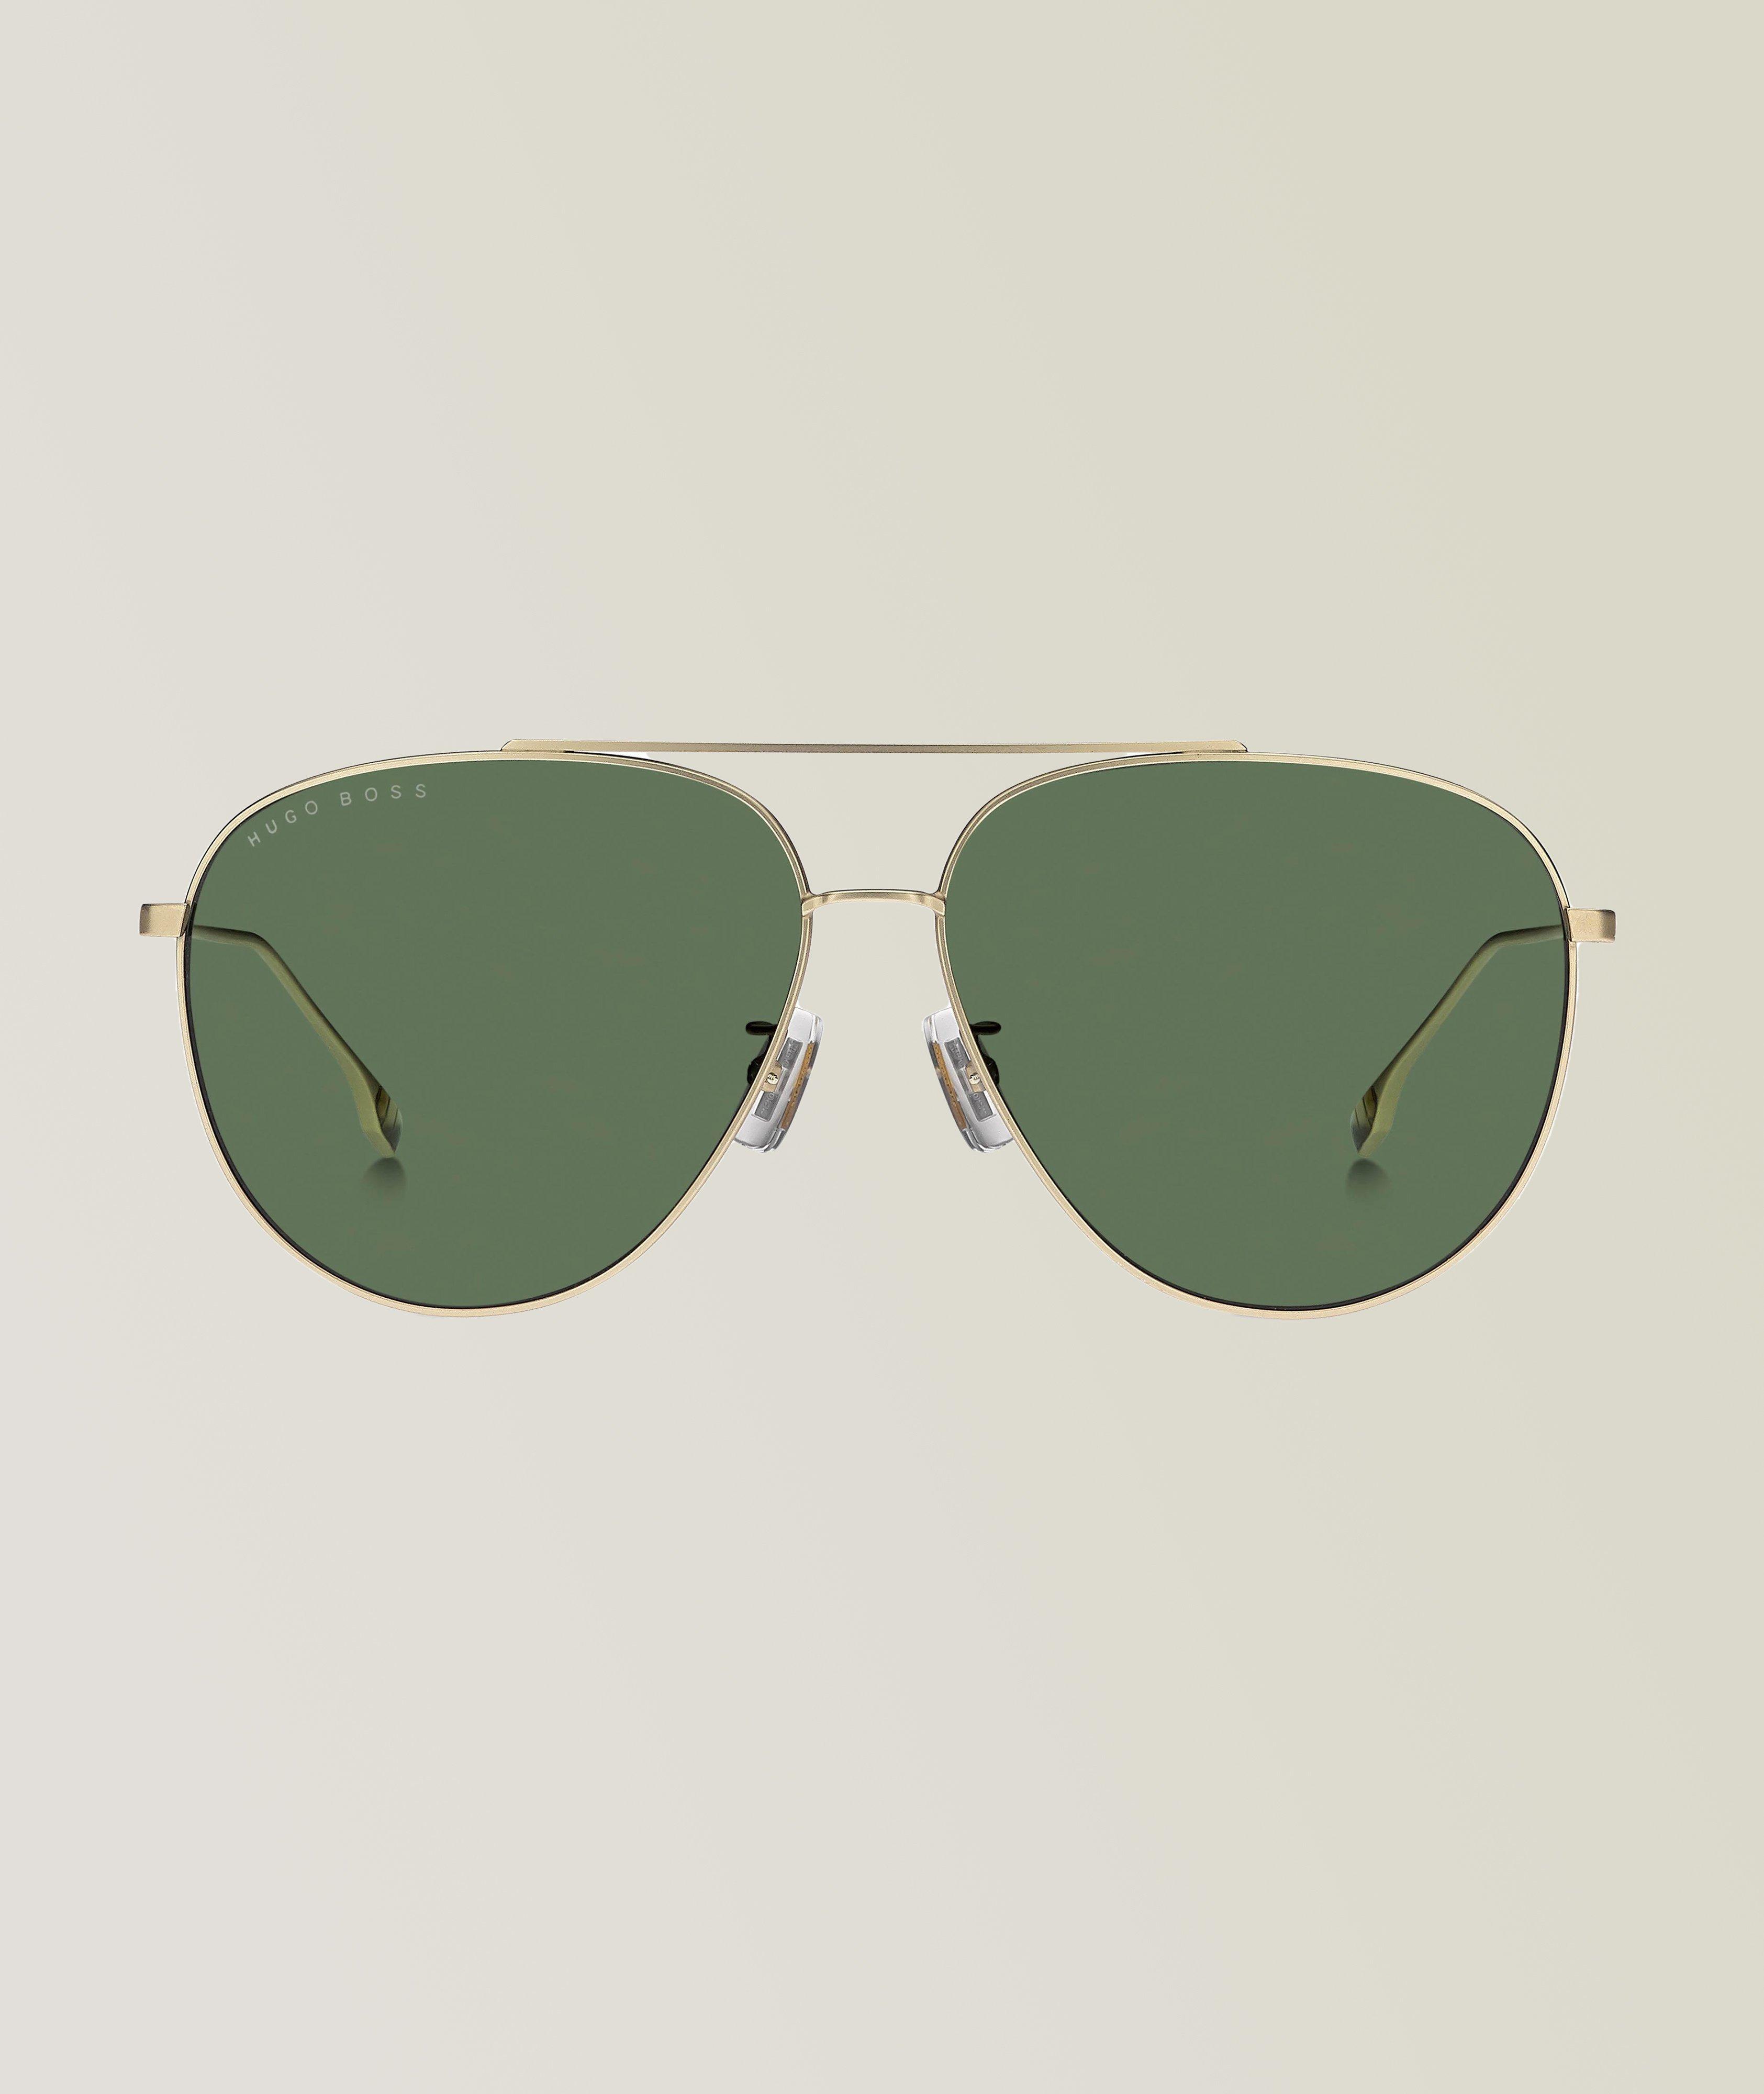 Hugo Boss Matt Gold Sunglasses With Green Lenses  image 0